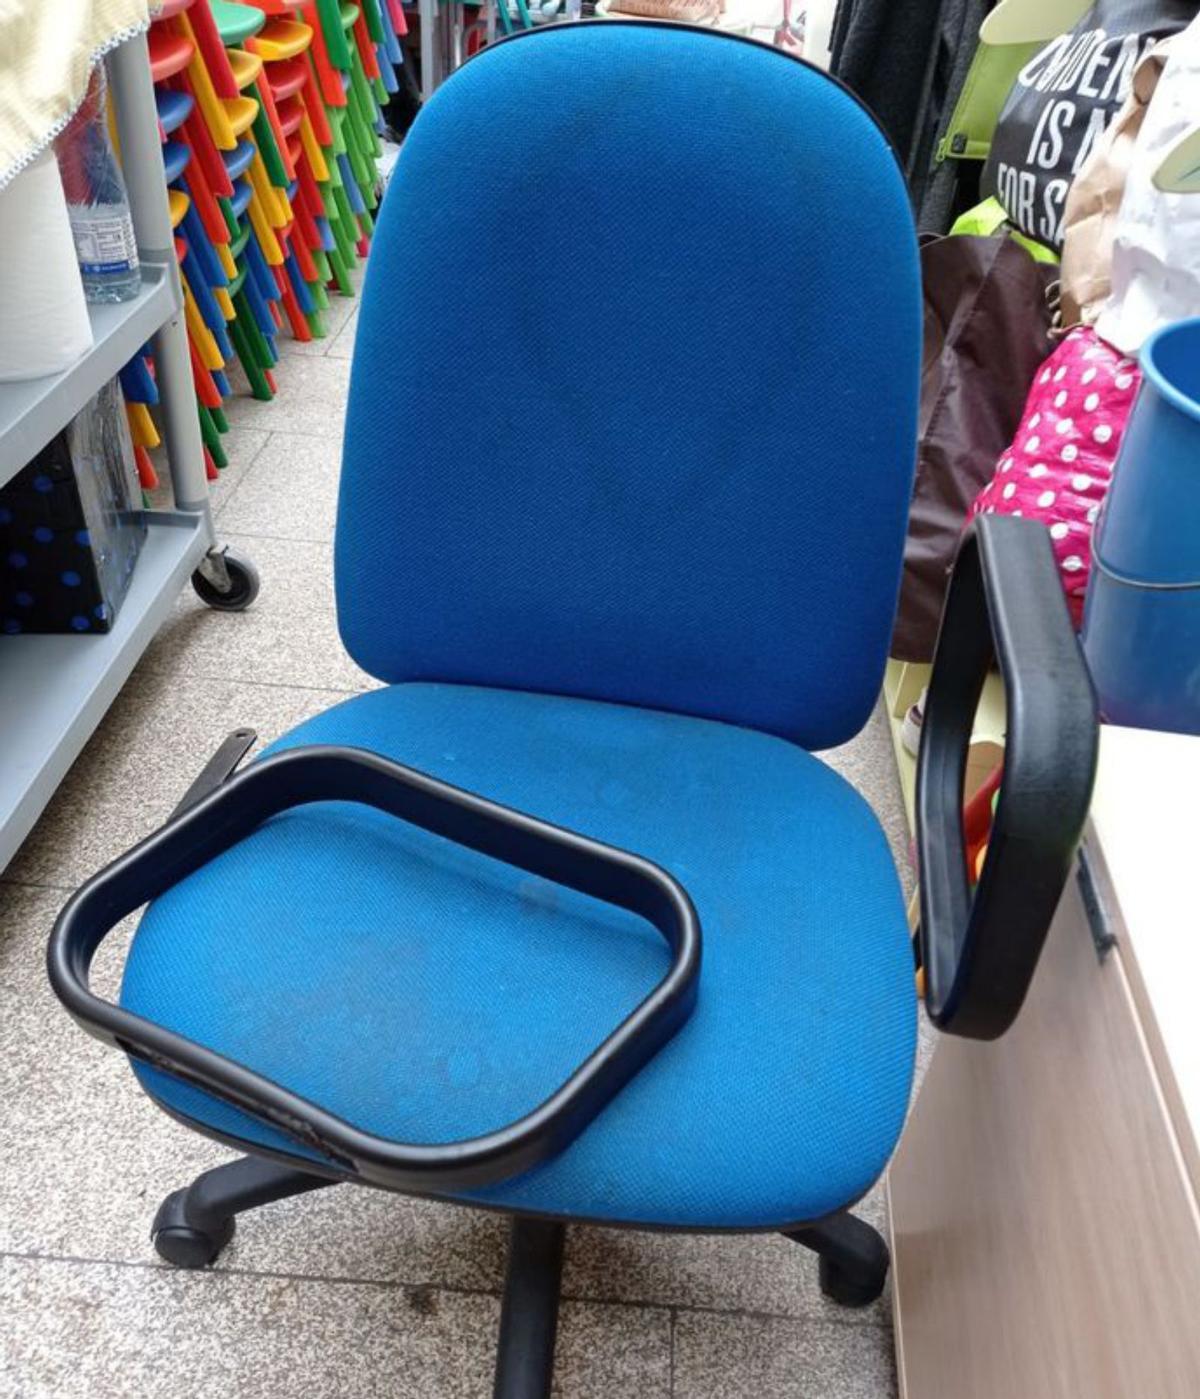 A cadeira facilitada á traballadora / cedida